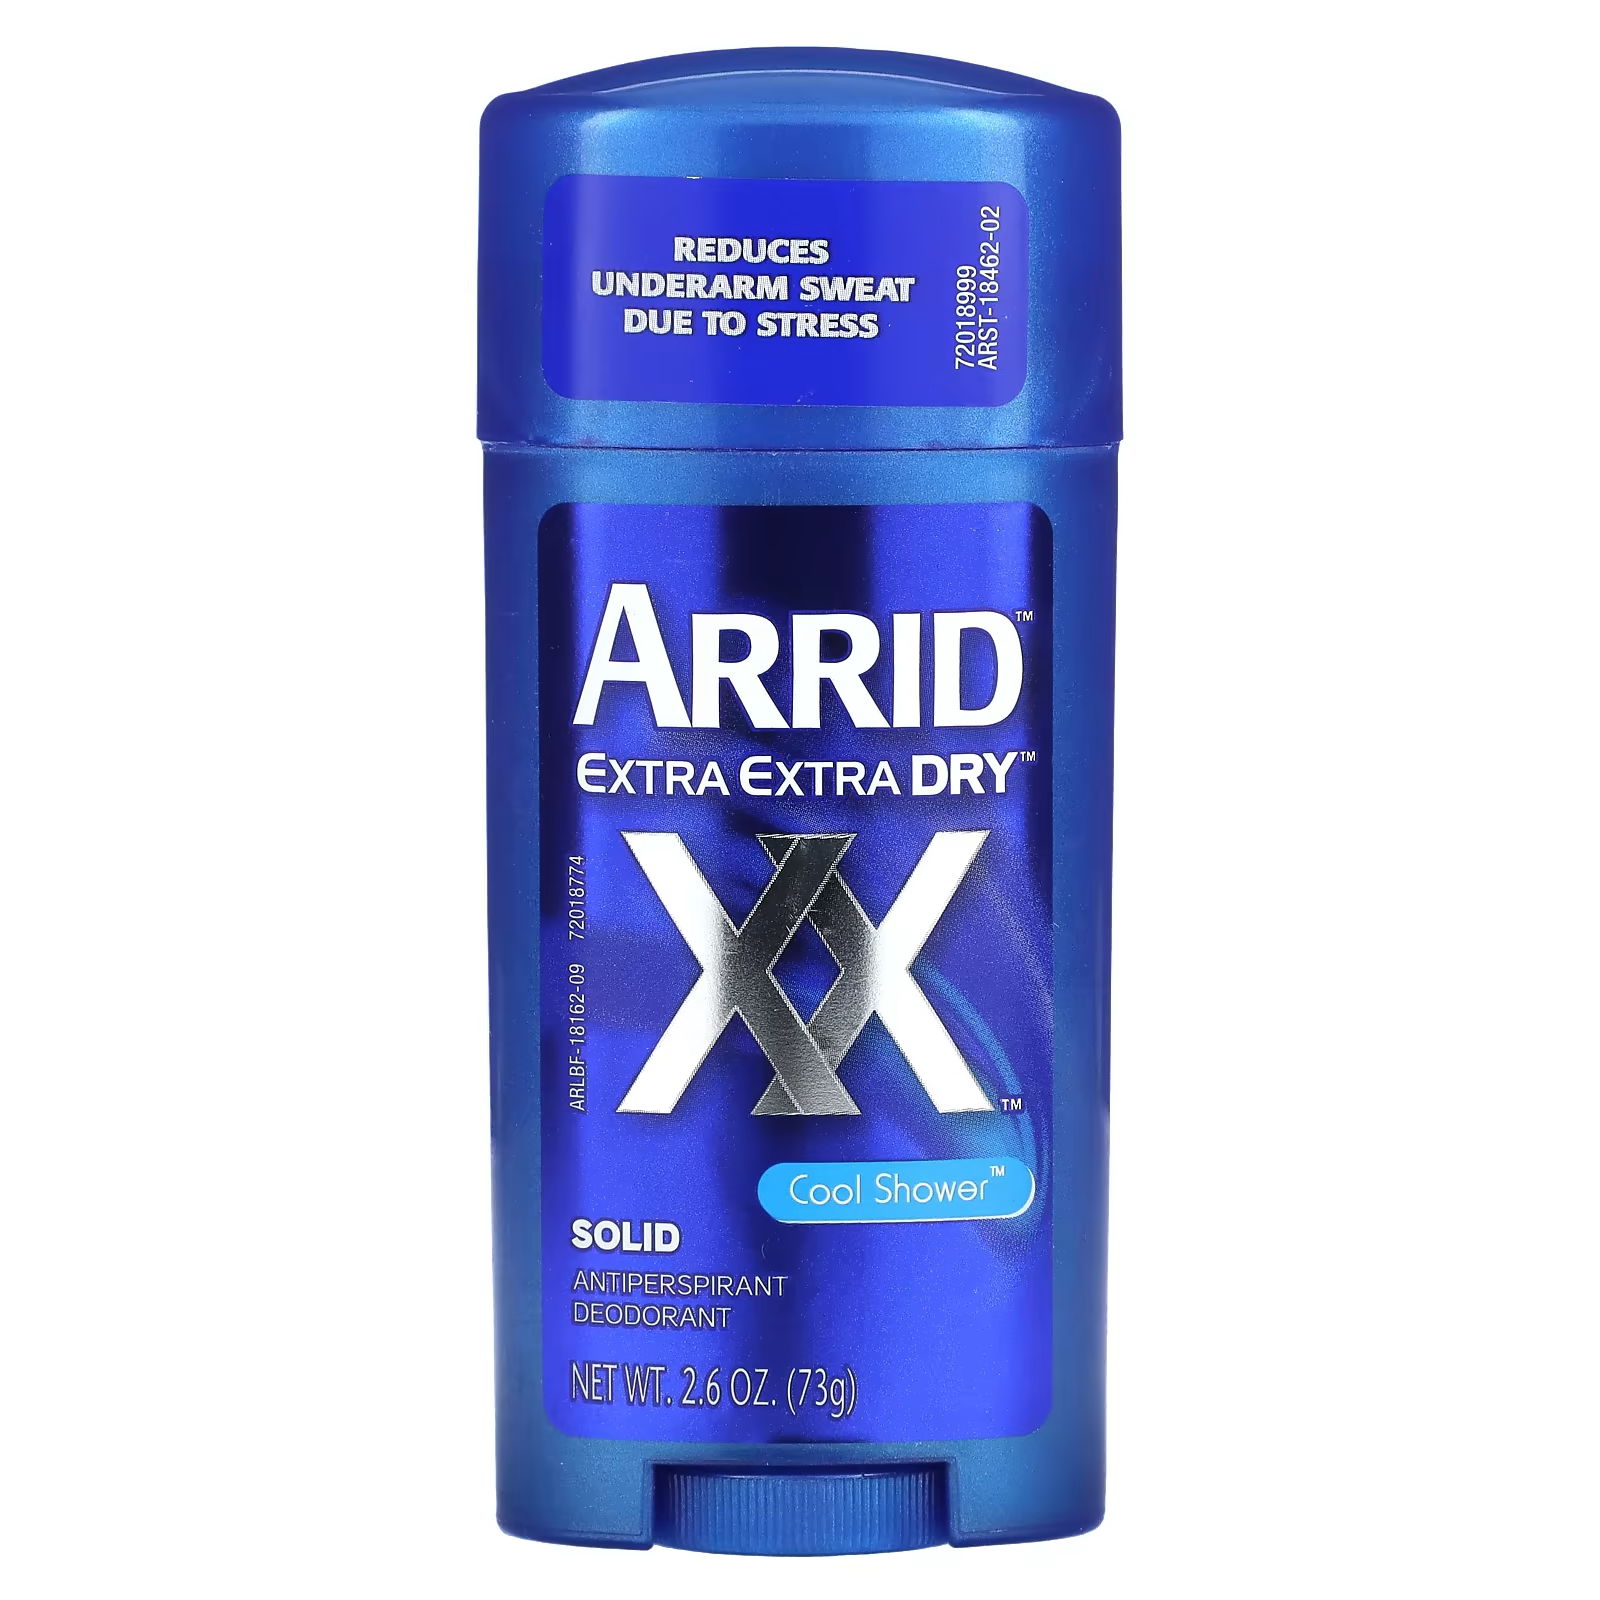 Дезодорант-антиперспирант твердый Arrid Extra Extra Dry XX Cool Shower arrid extra extra dry xx твердый дезодорант антиперспирант прохладный душ 73 г 2 6 унции